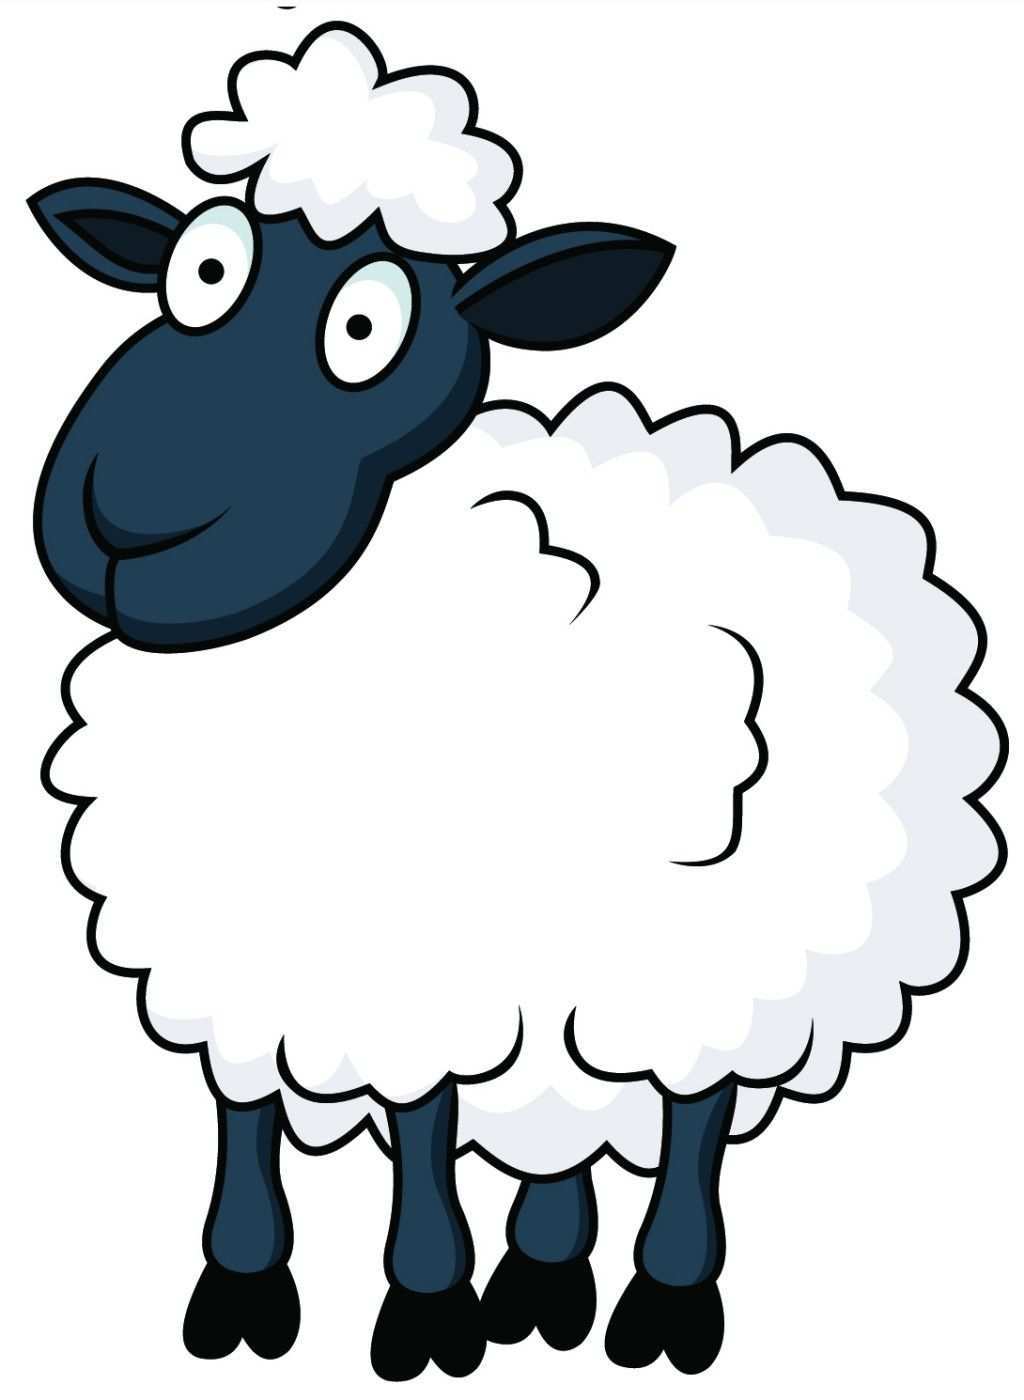 Funny Eid Ul Adha Sheep Cartoon Picture 9 Jpg 1024 1400 Schafe Cartoon Schafe Malen Schaf Zeichnen